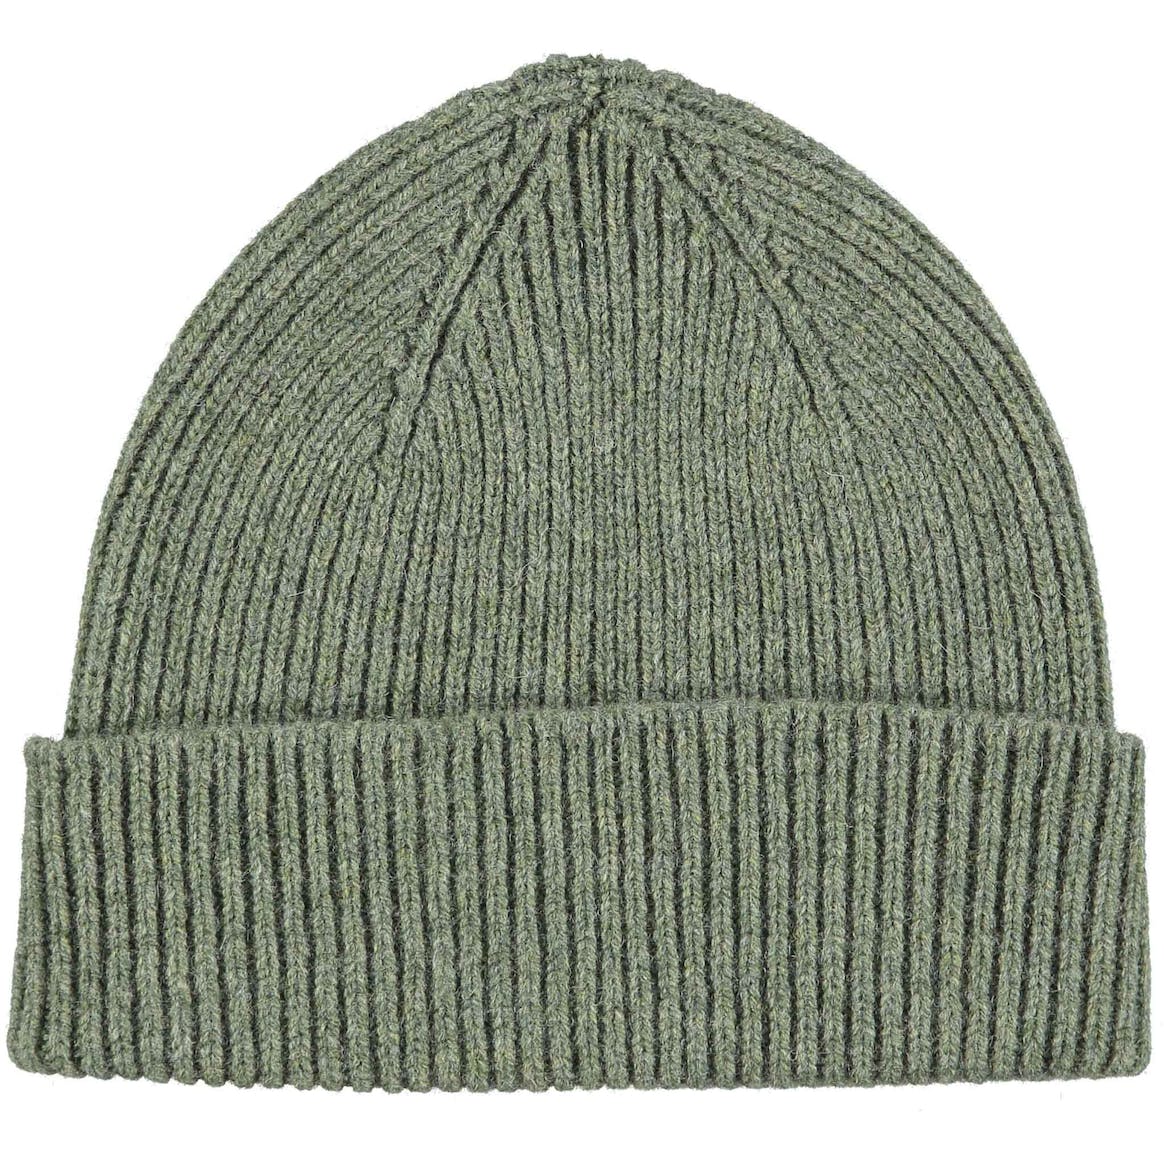 Moss Green Merino Lambswool Beanie Hat